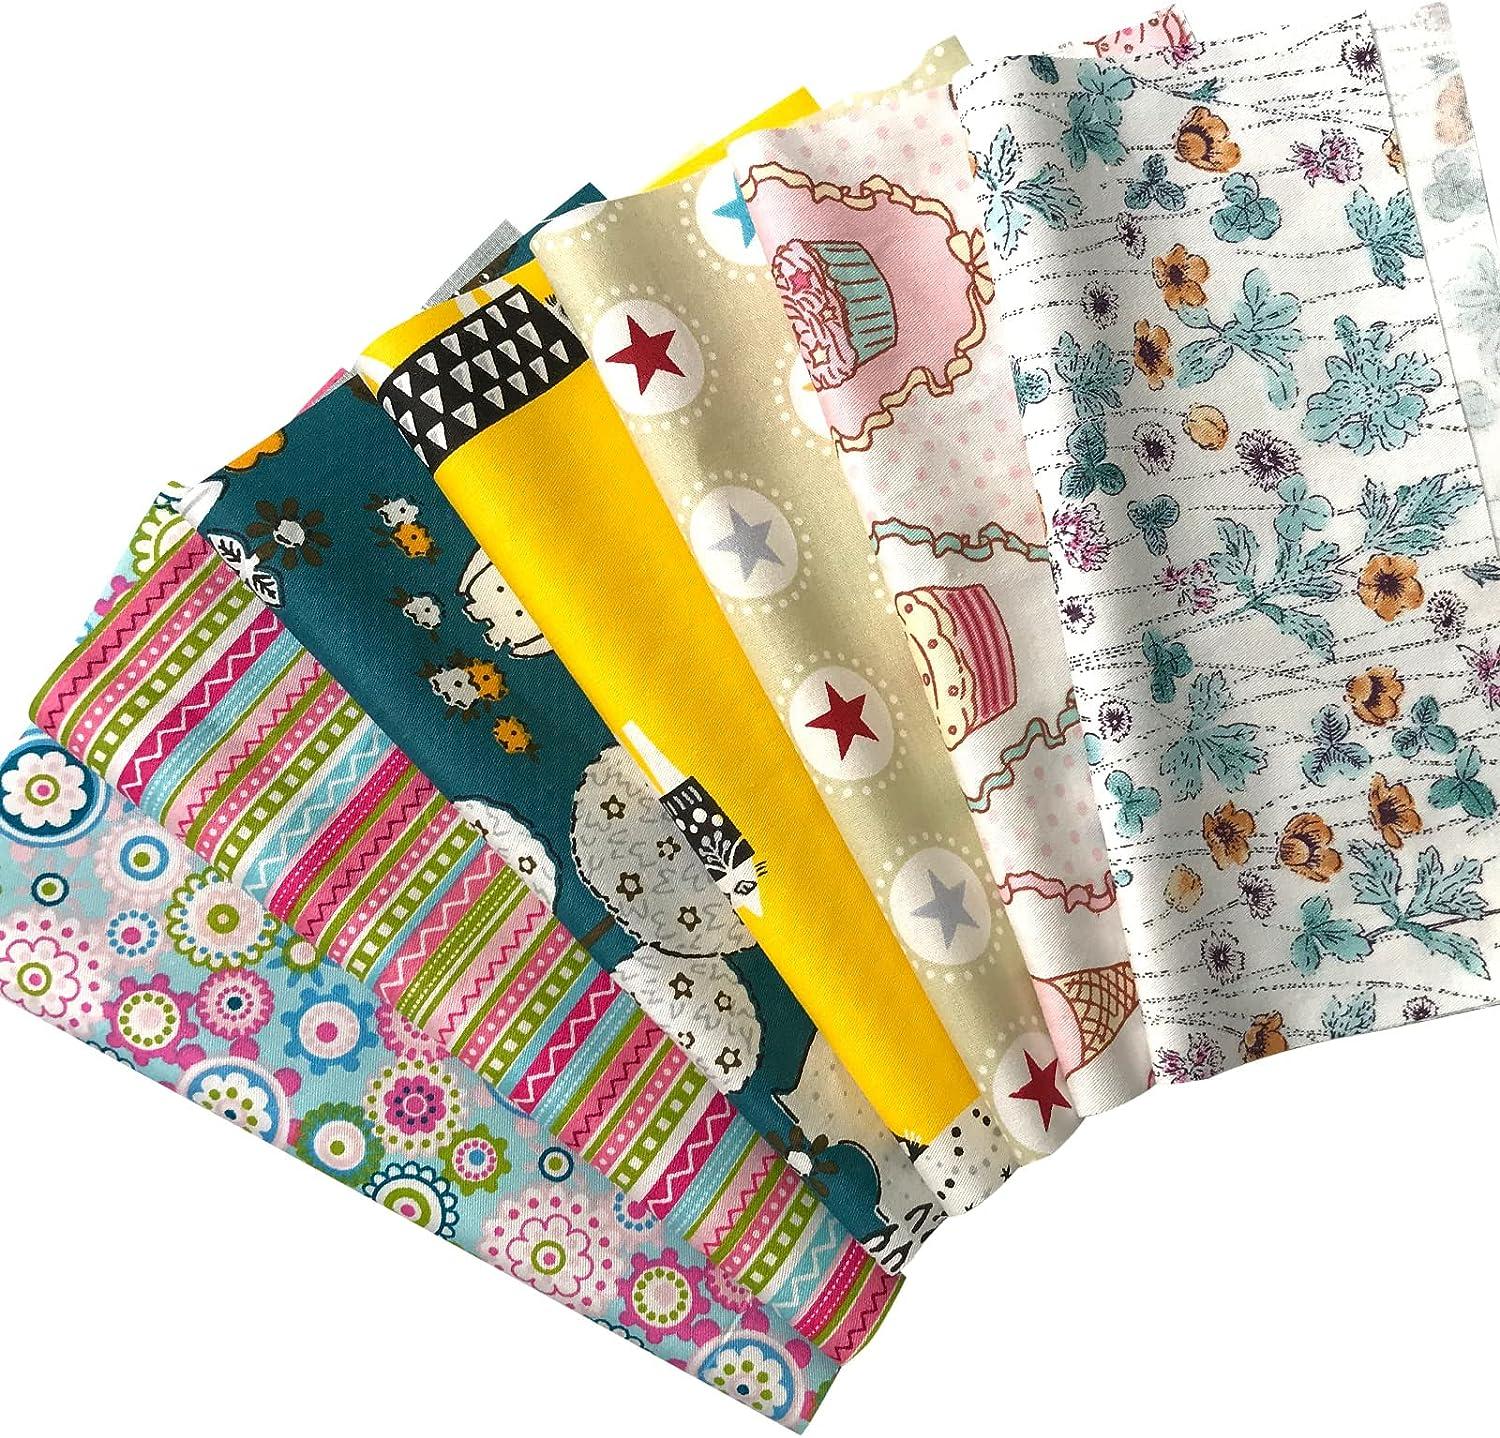 18 x 22 Fat Quarters Fabric Bundles 100% Cotton Quilting Fabric Bundles  for Quilt, Sewing Project, Patchwork Precut Quilt Squares